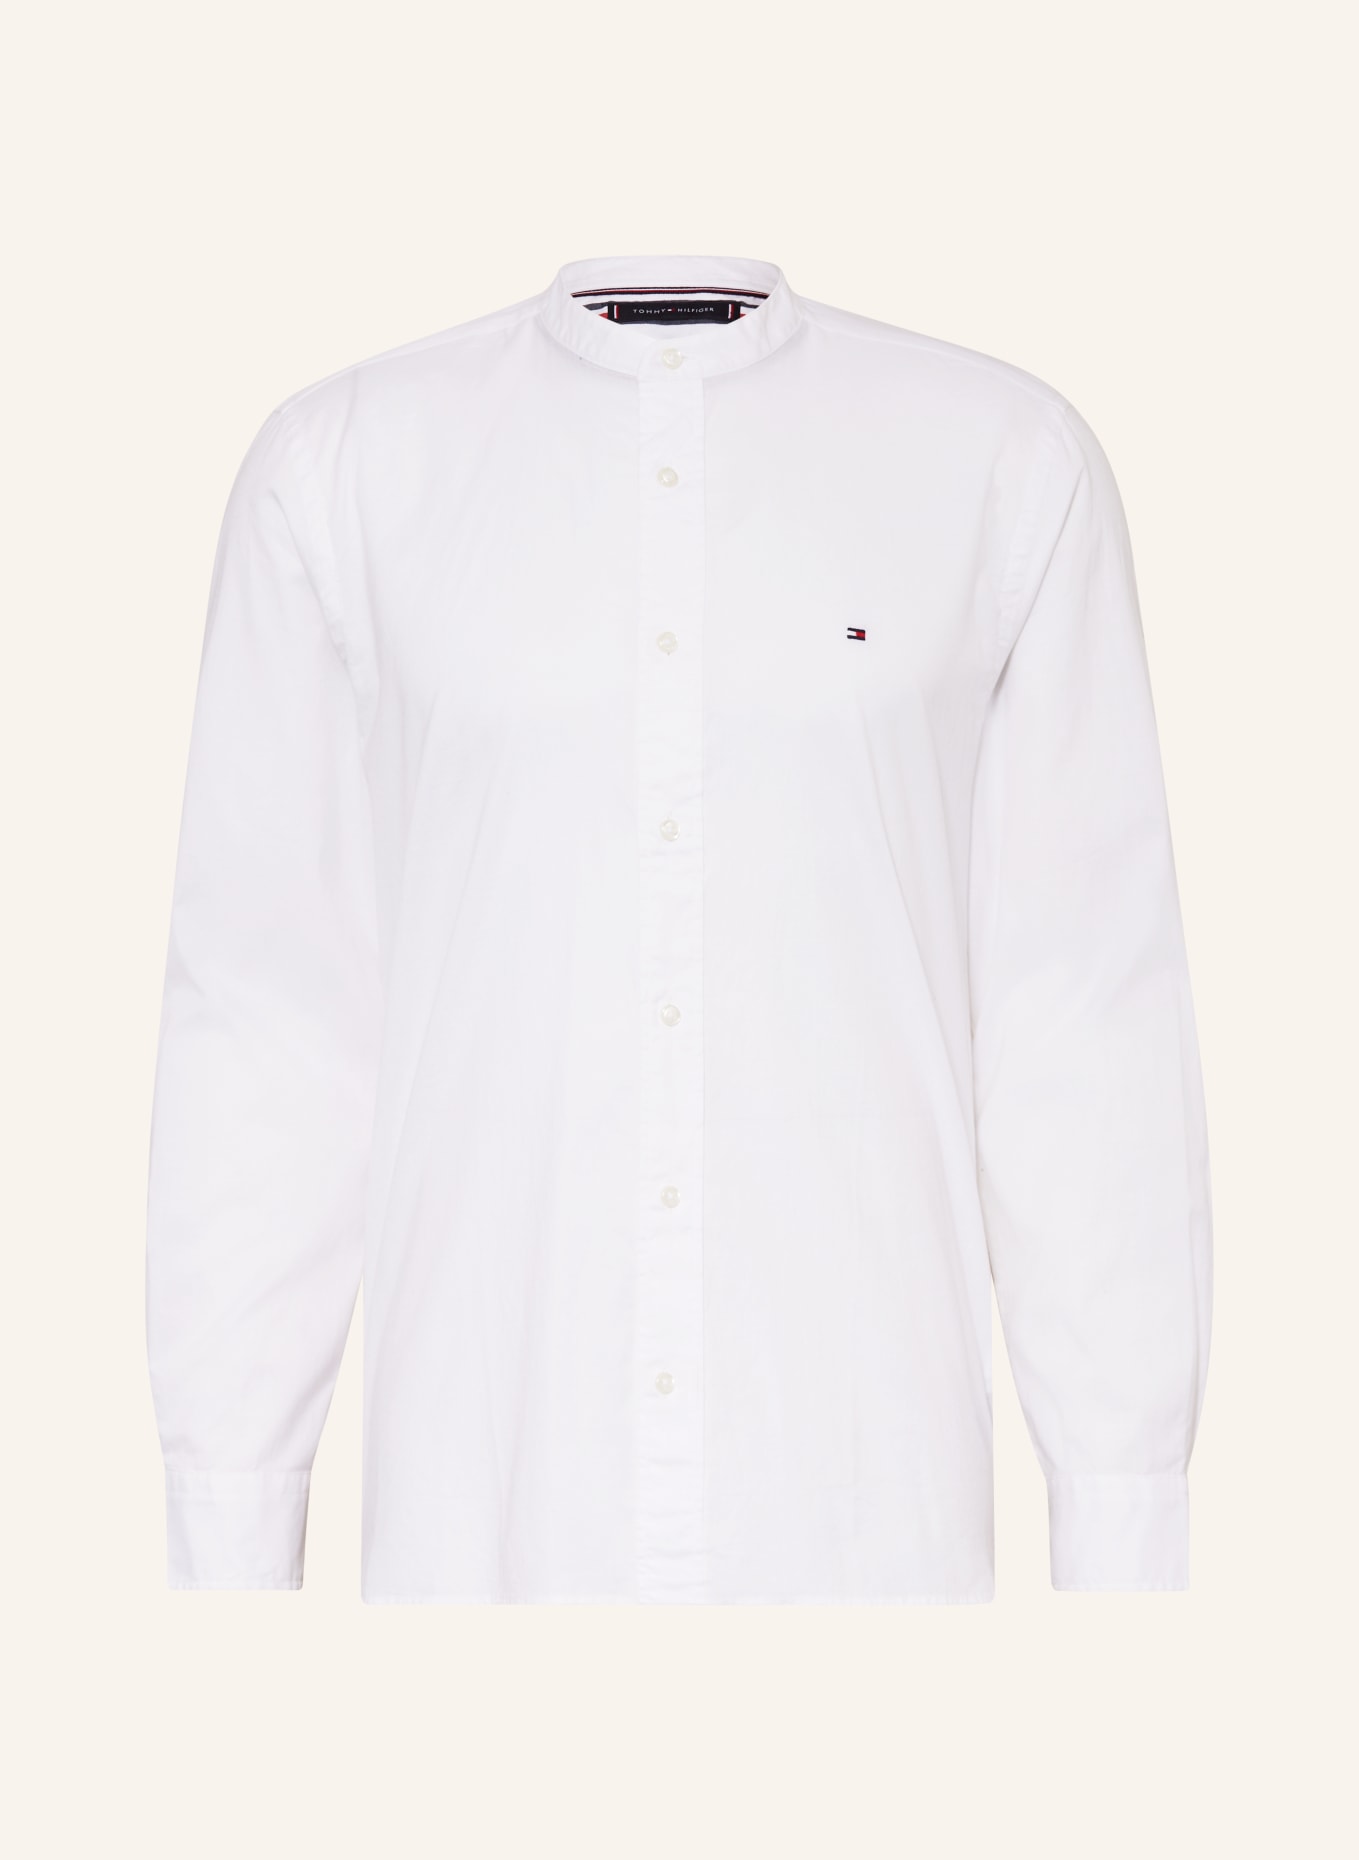 TOMMY HILFIGER Shirt regular fit, Color: WHITE (Image 1)